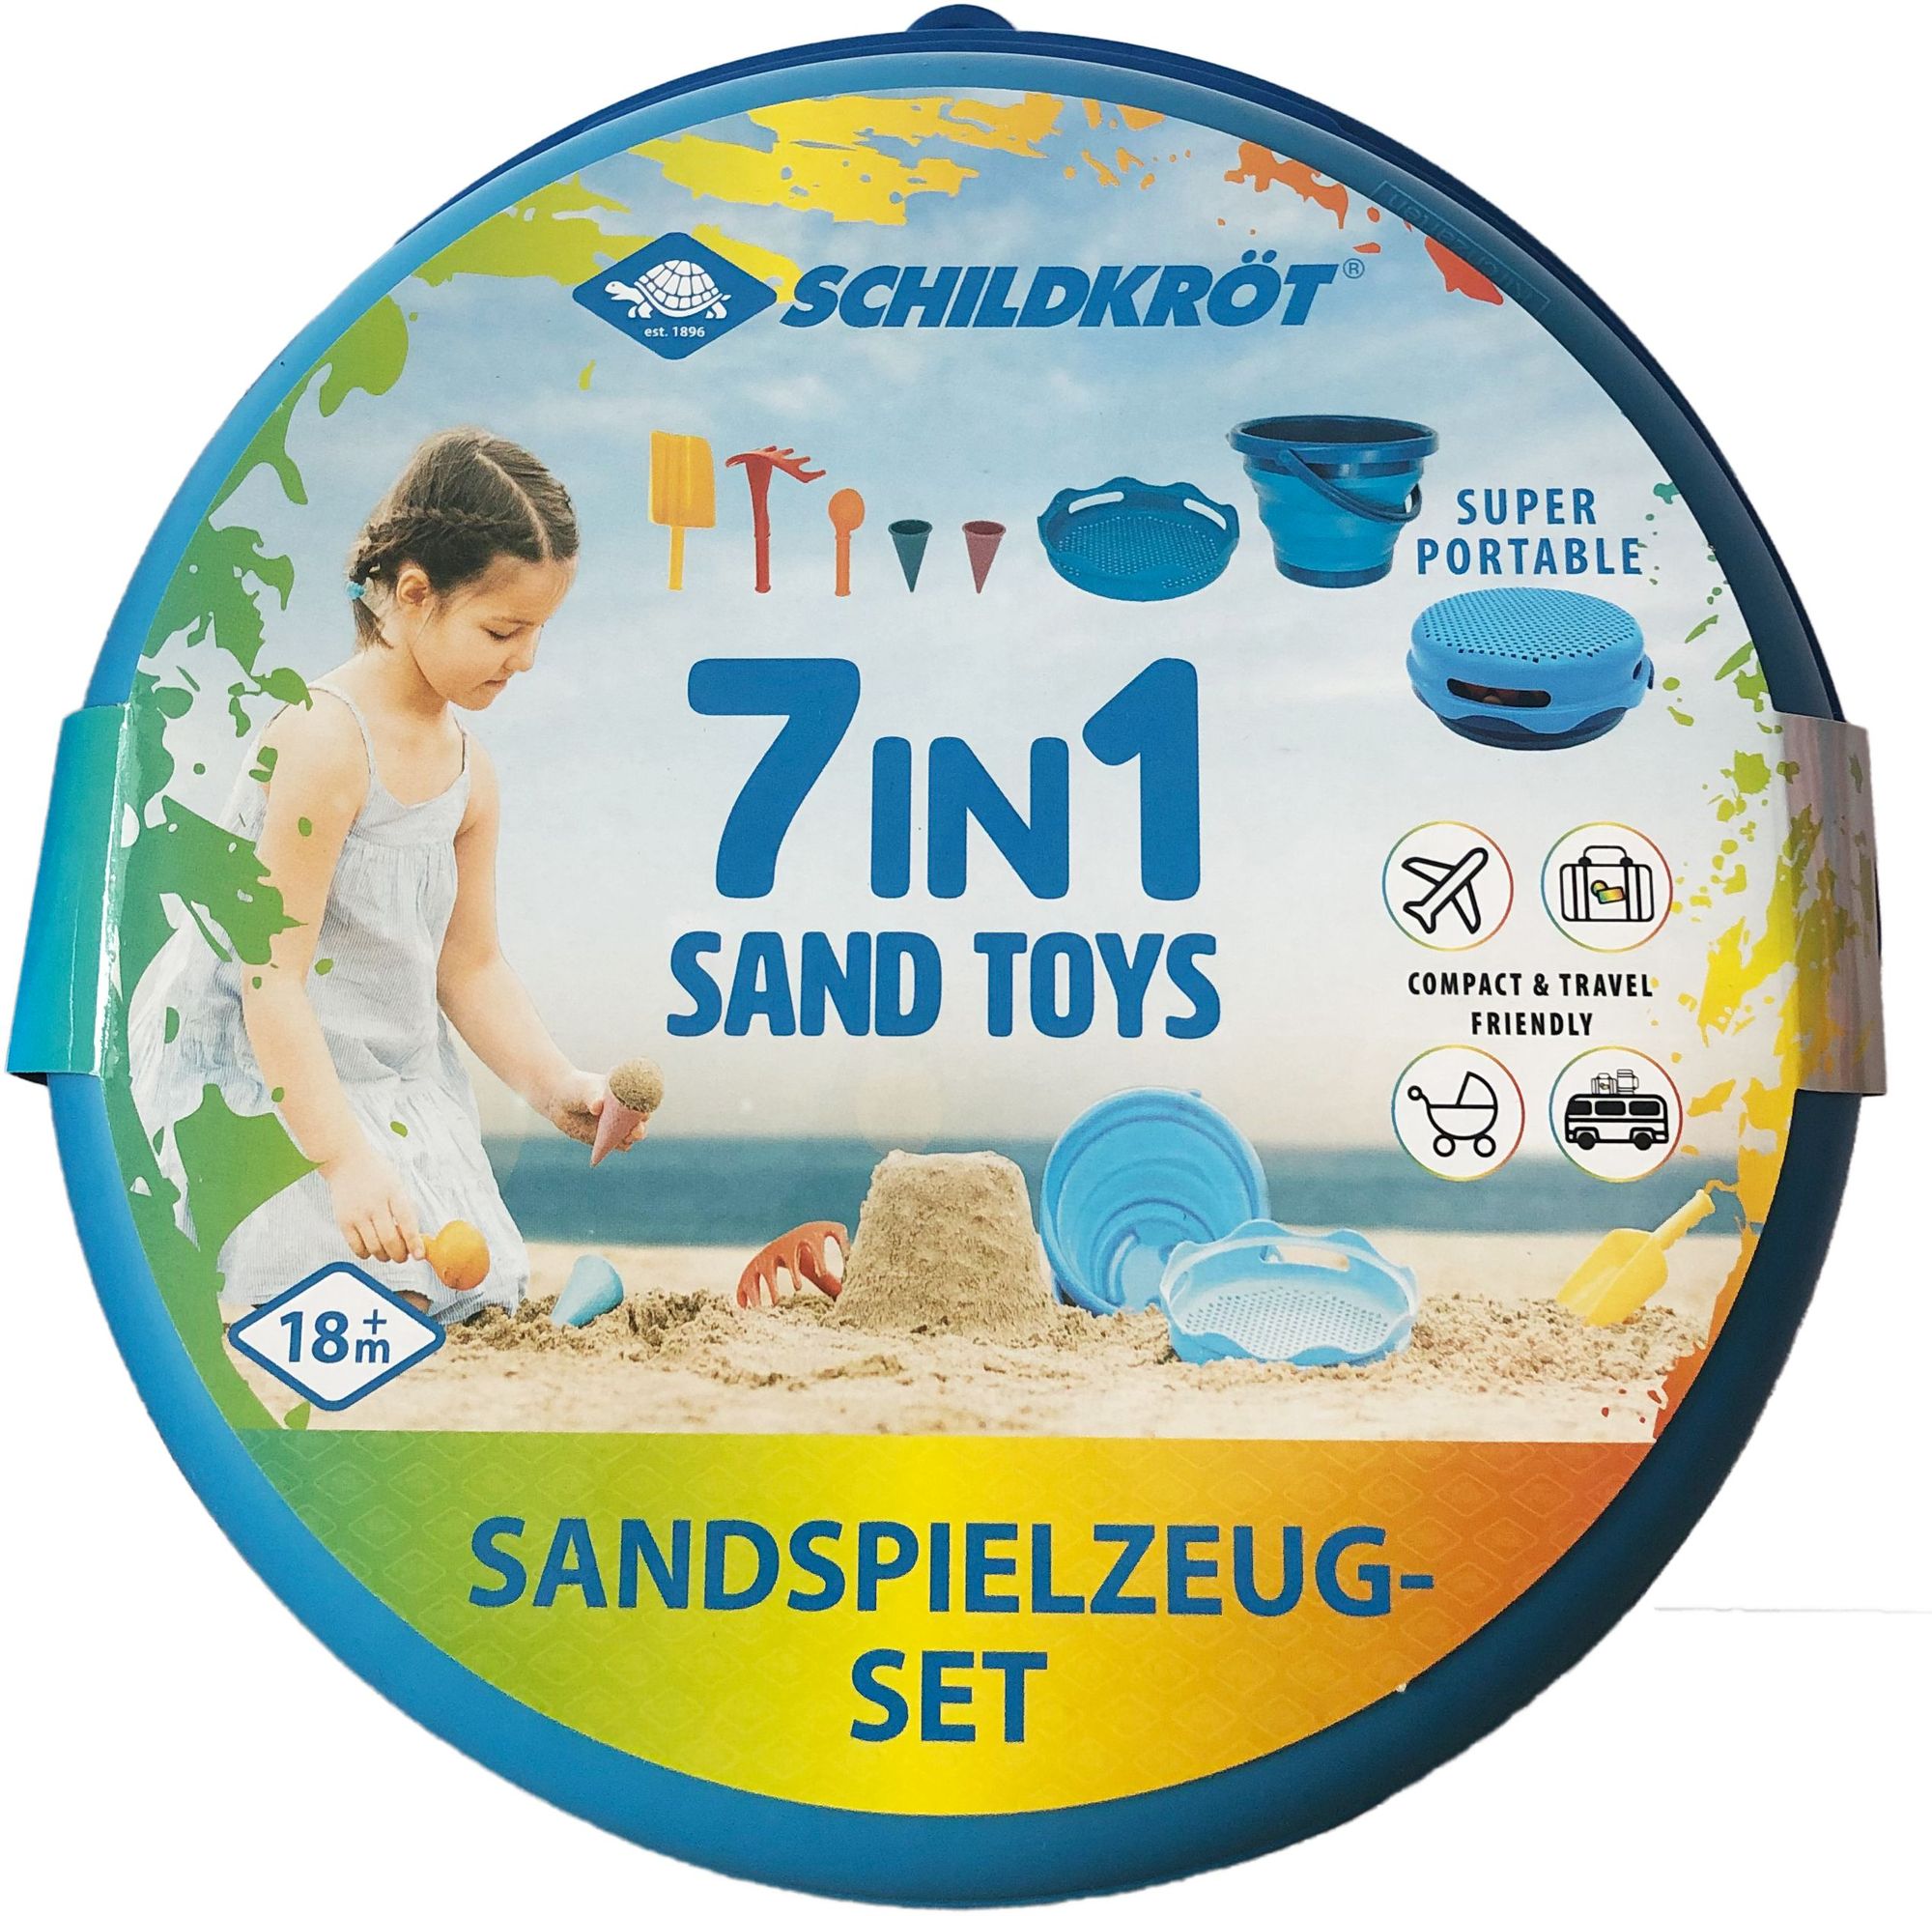 Schildkröt Funsport - 7in1 Sand Toys Falteimer Set - Blau' kaufen -  Spielwaren